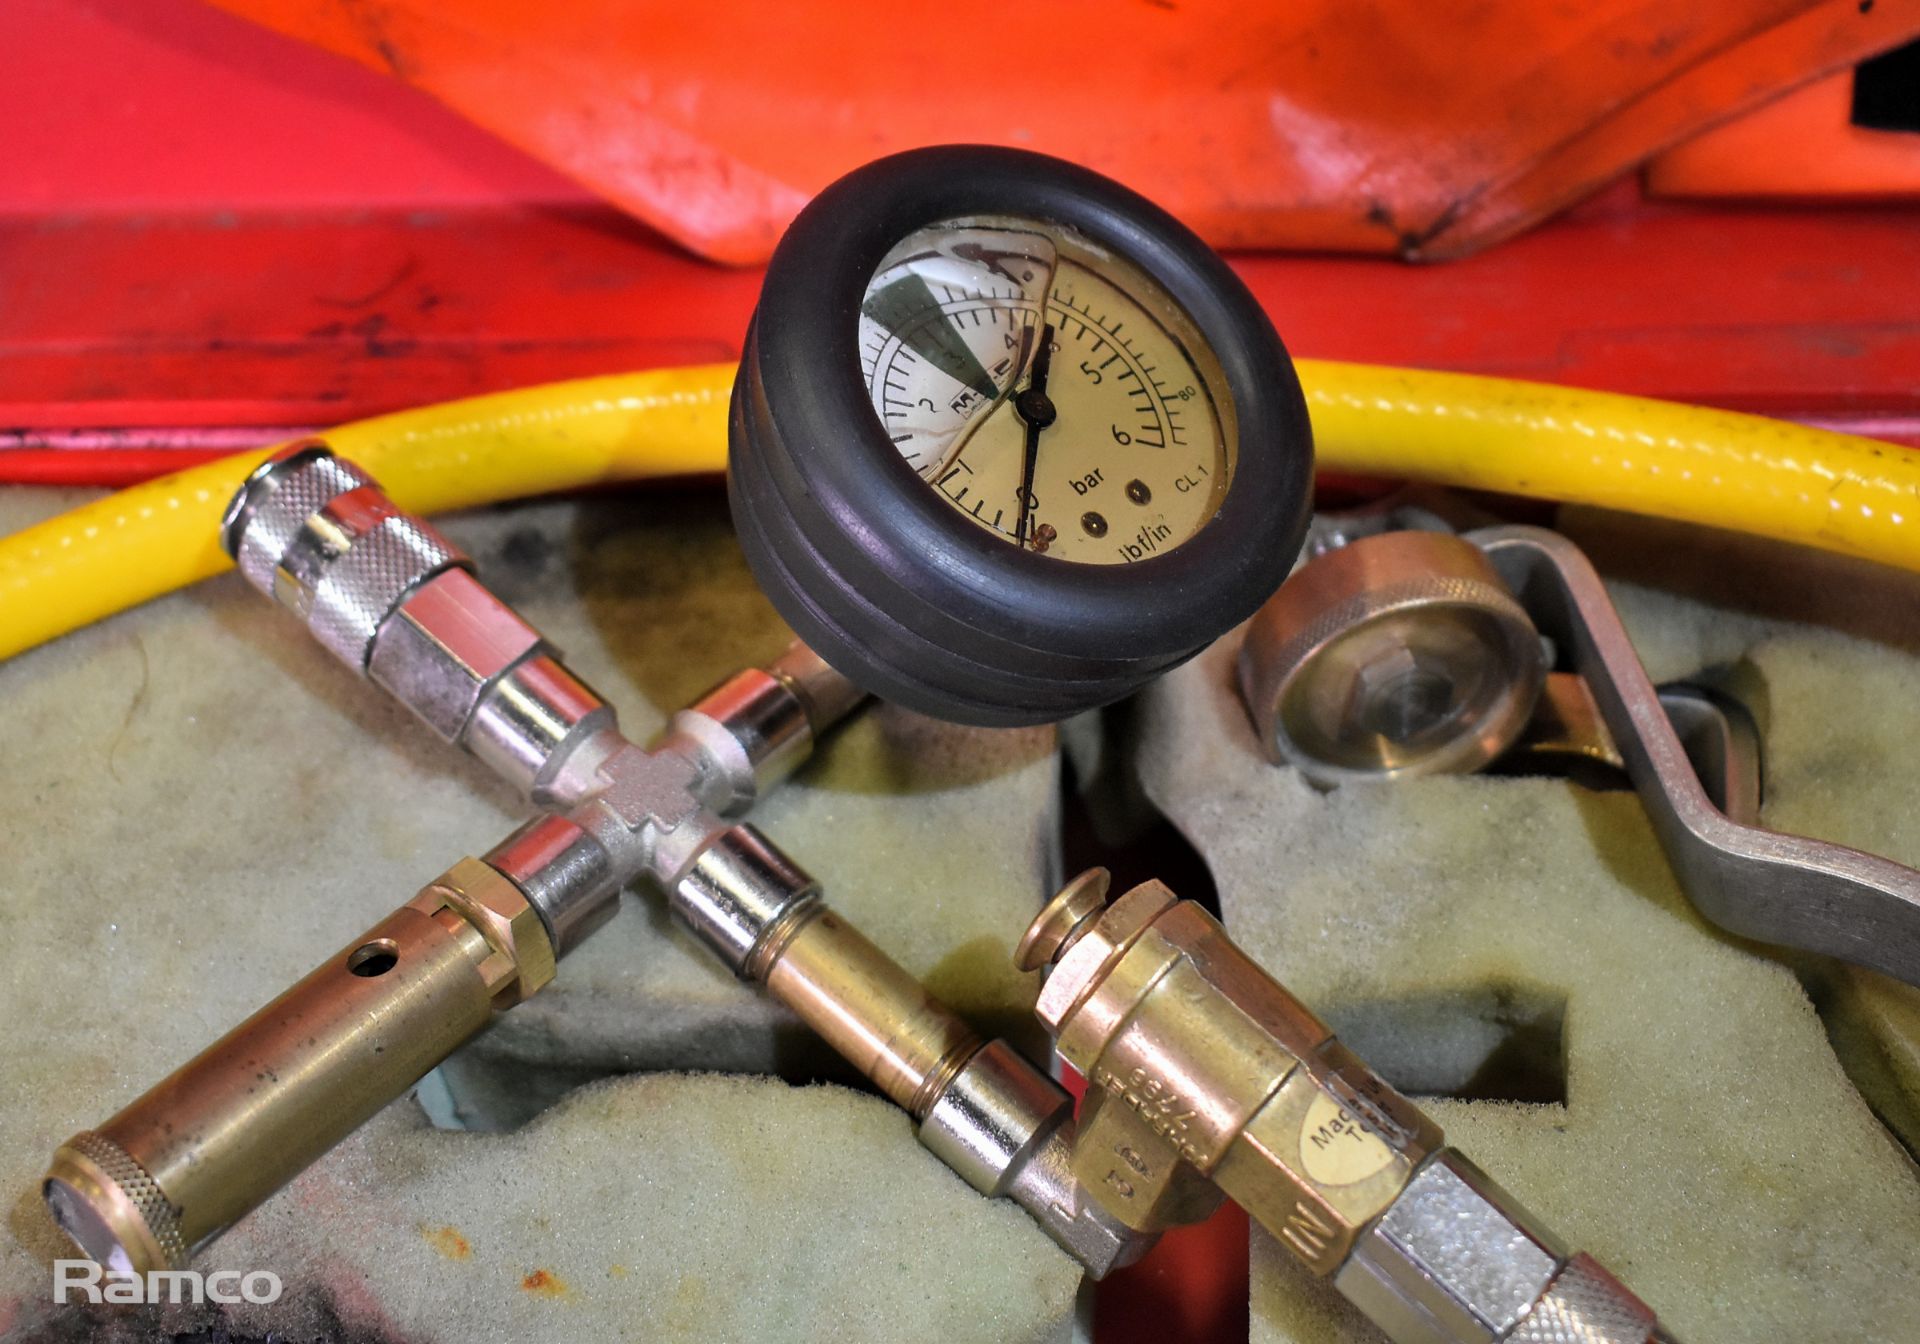 MFC Survival Ltd fire hose inflation kit - Image 4 of 7